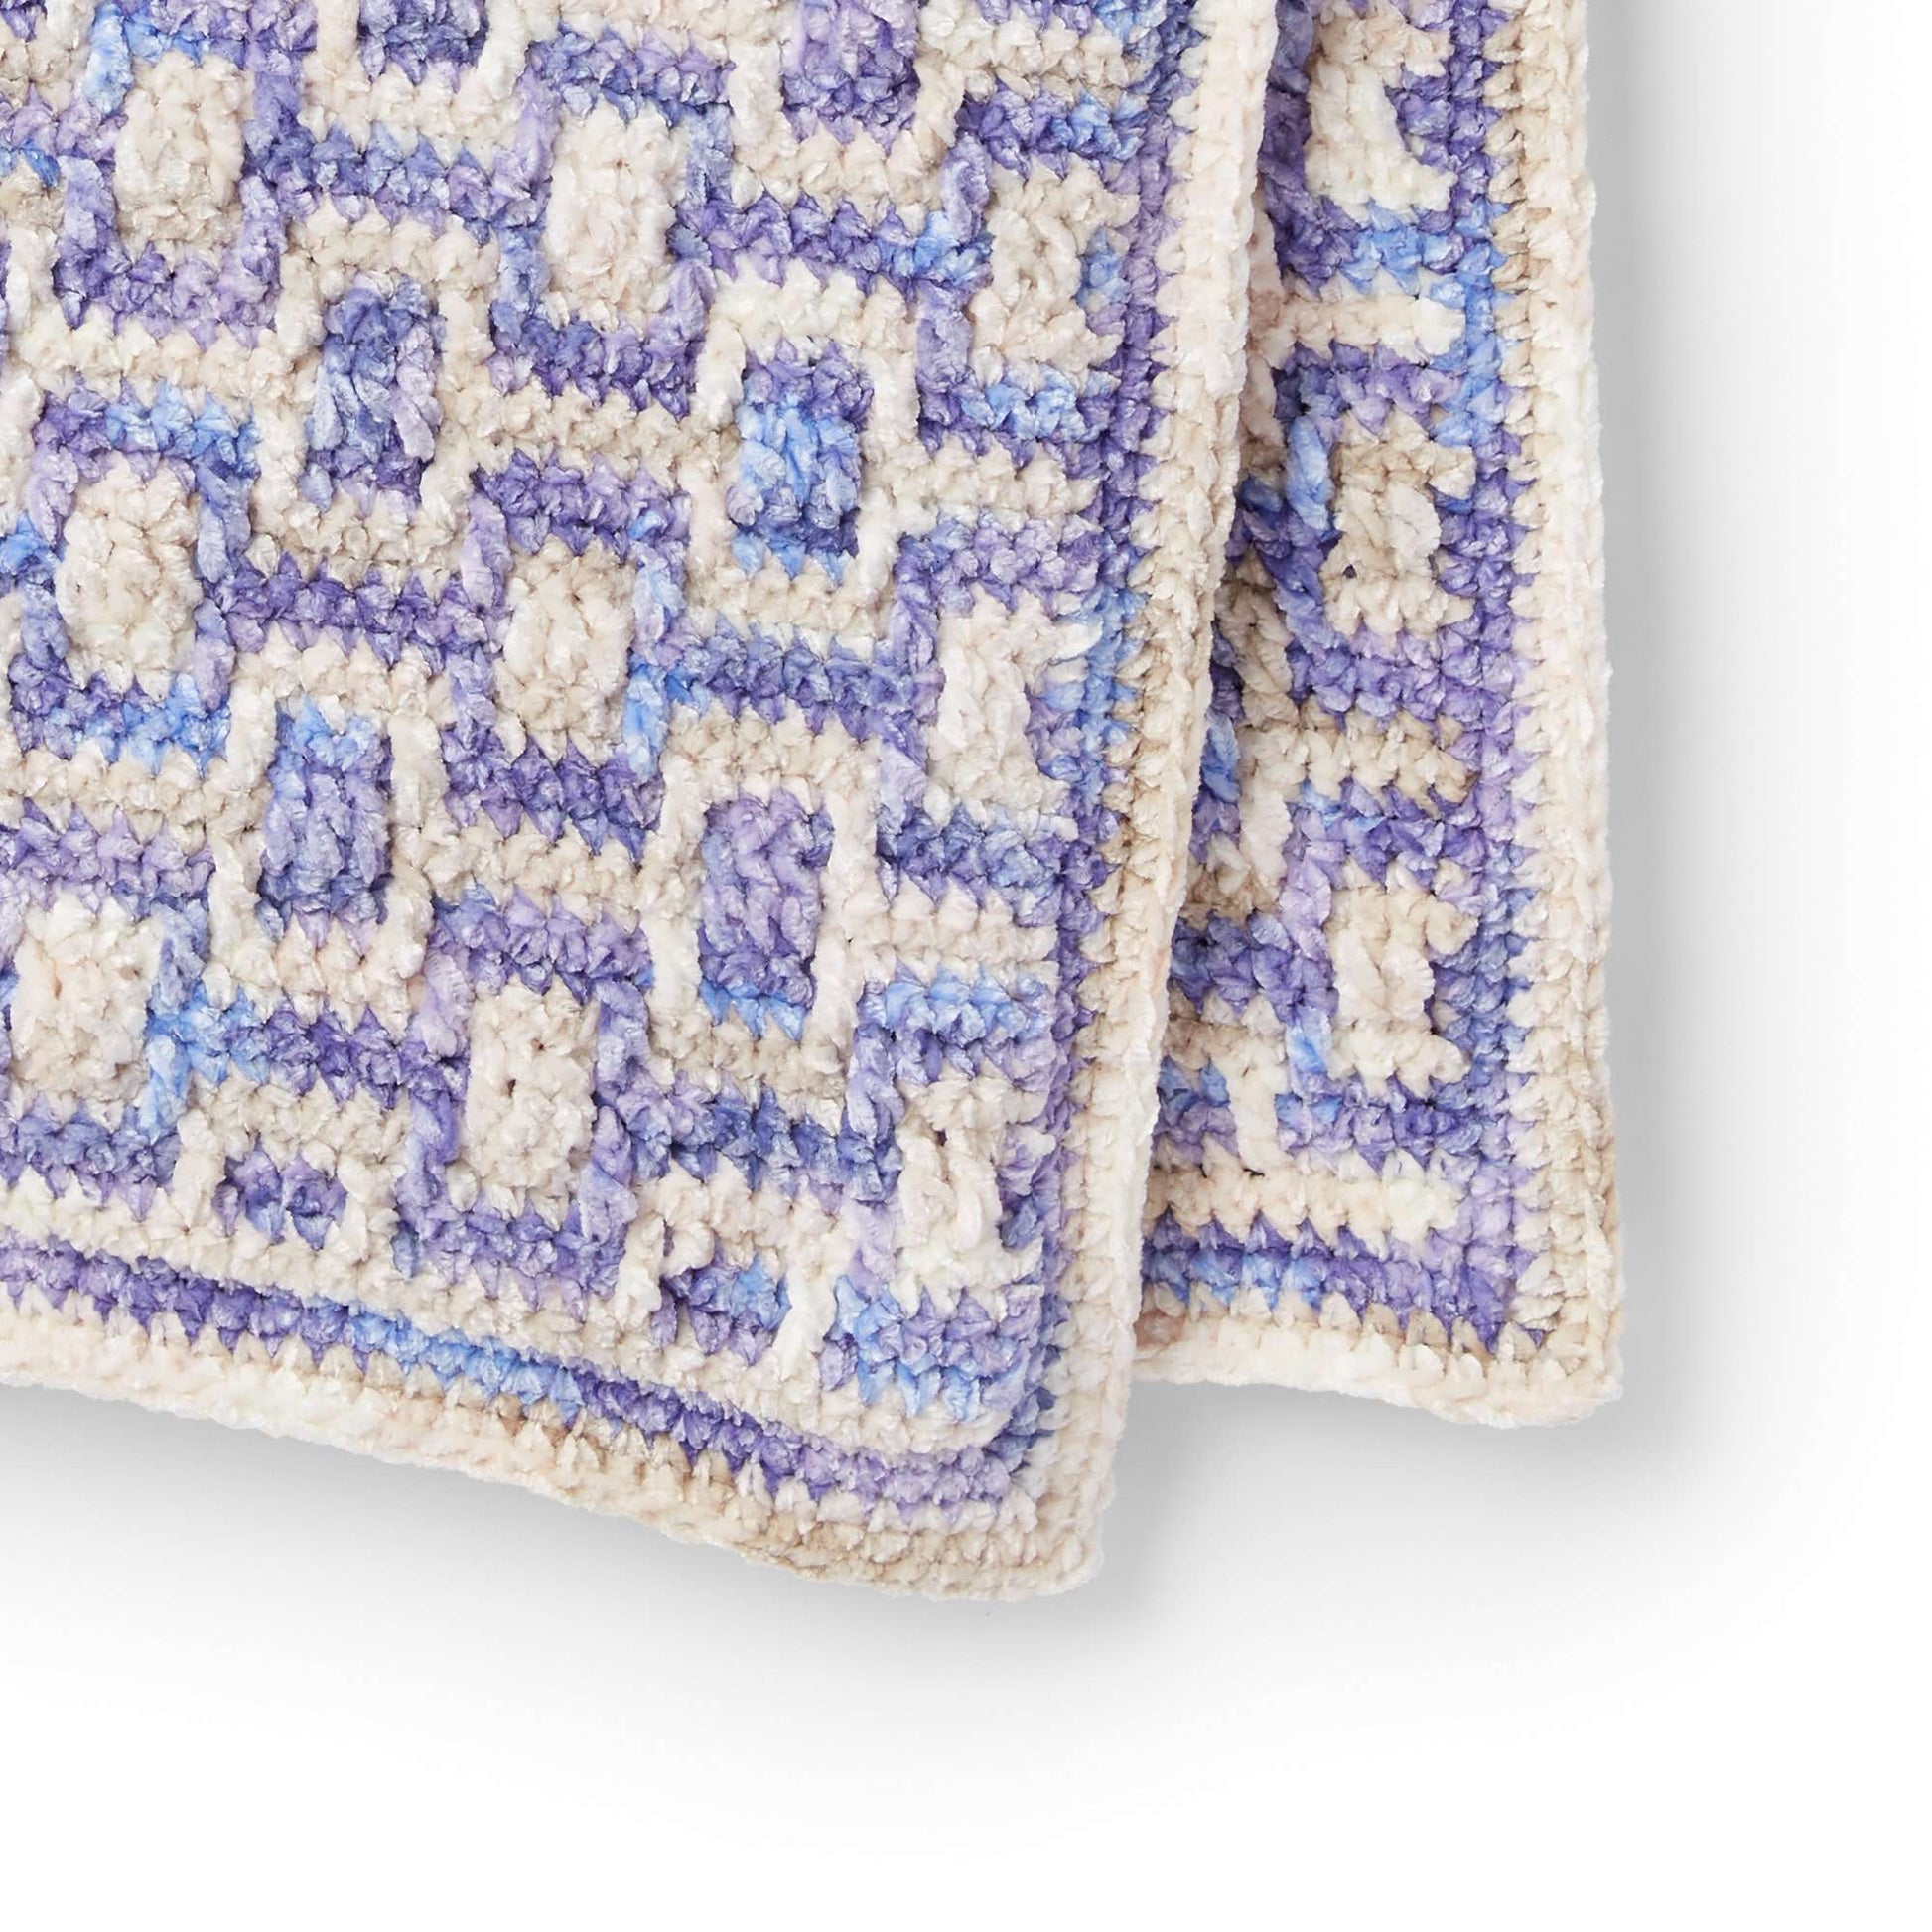 Bernat Mosaic Crochet Blanket Crochet Blanket made in Bernat Baby Crushed Velvet yarn